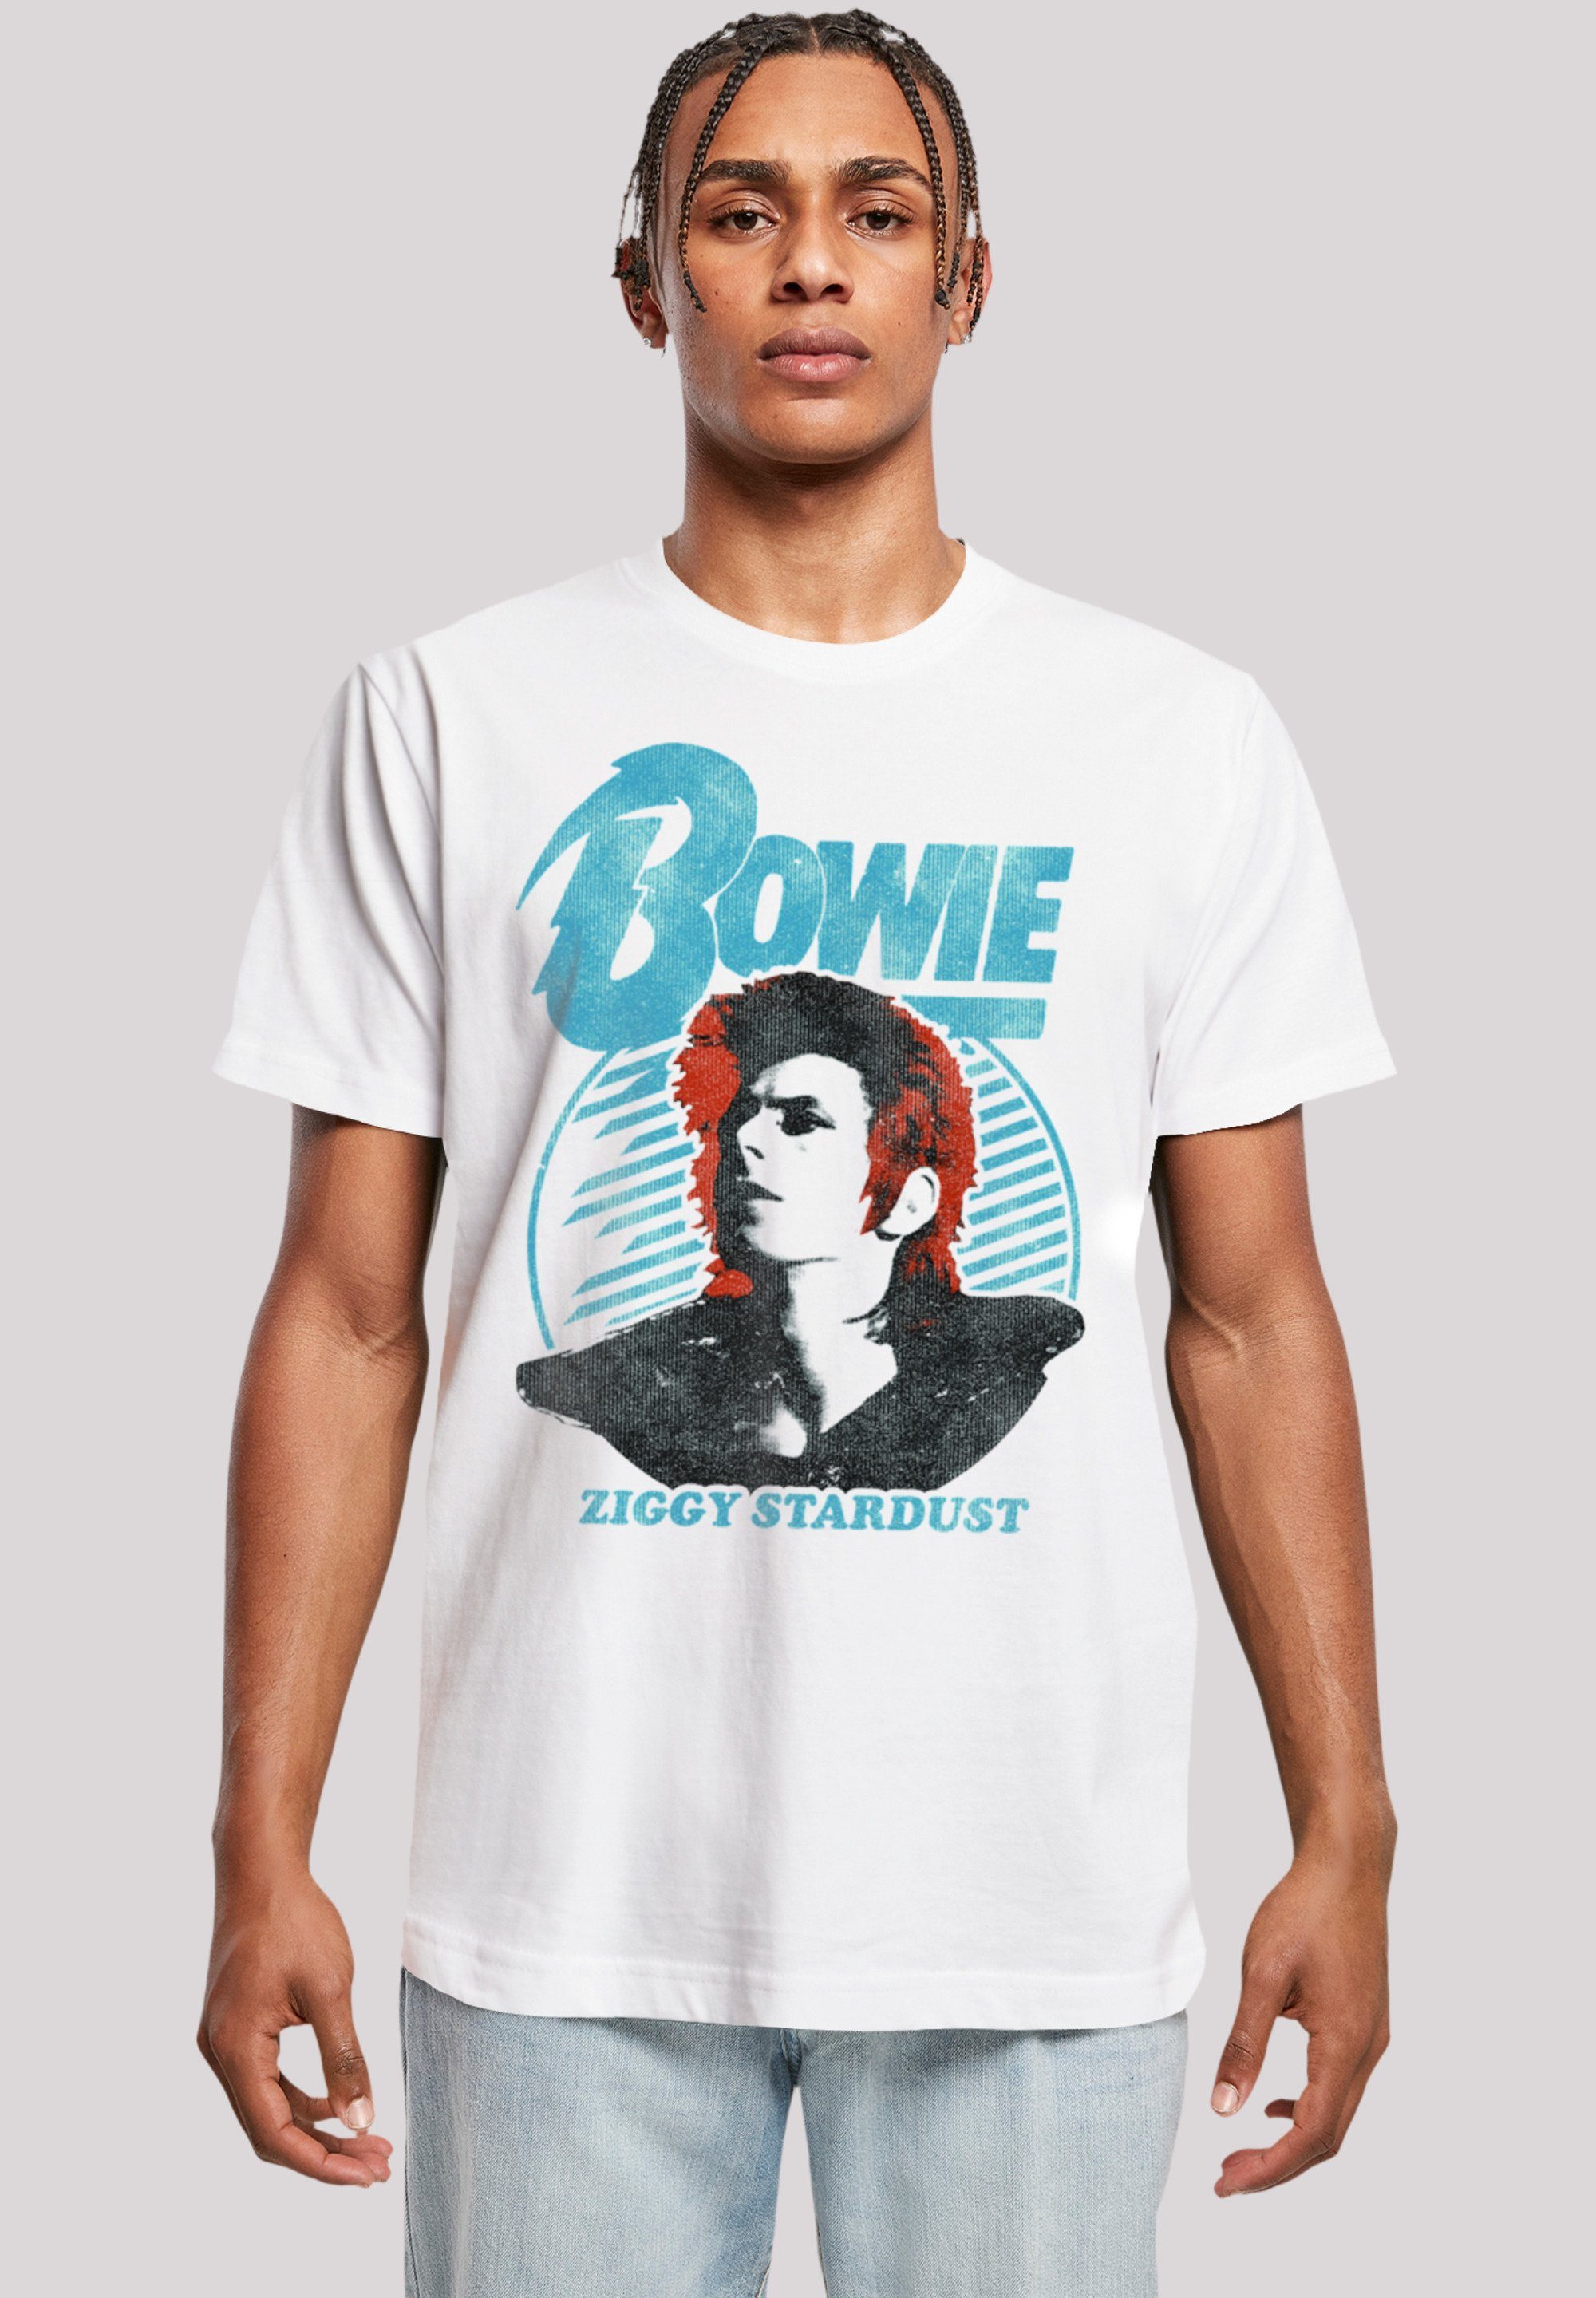 F4NT4STIC T-Shirt David Bowie Ziggy Stardust Orange Print